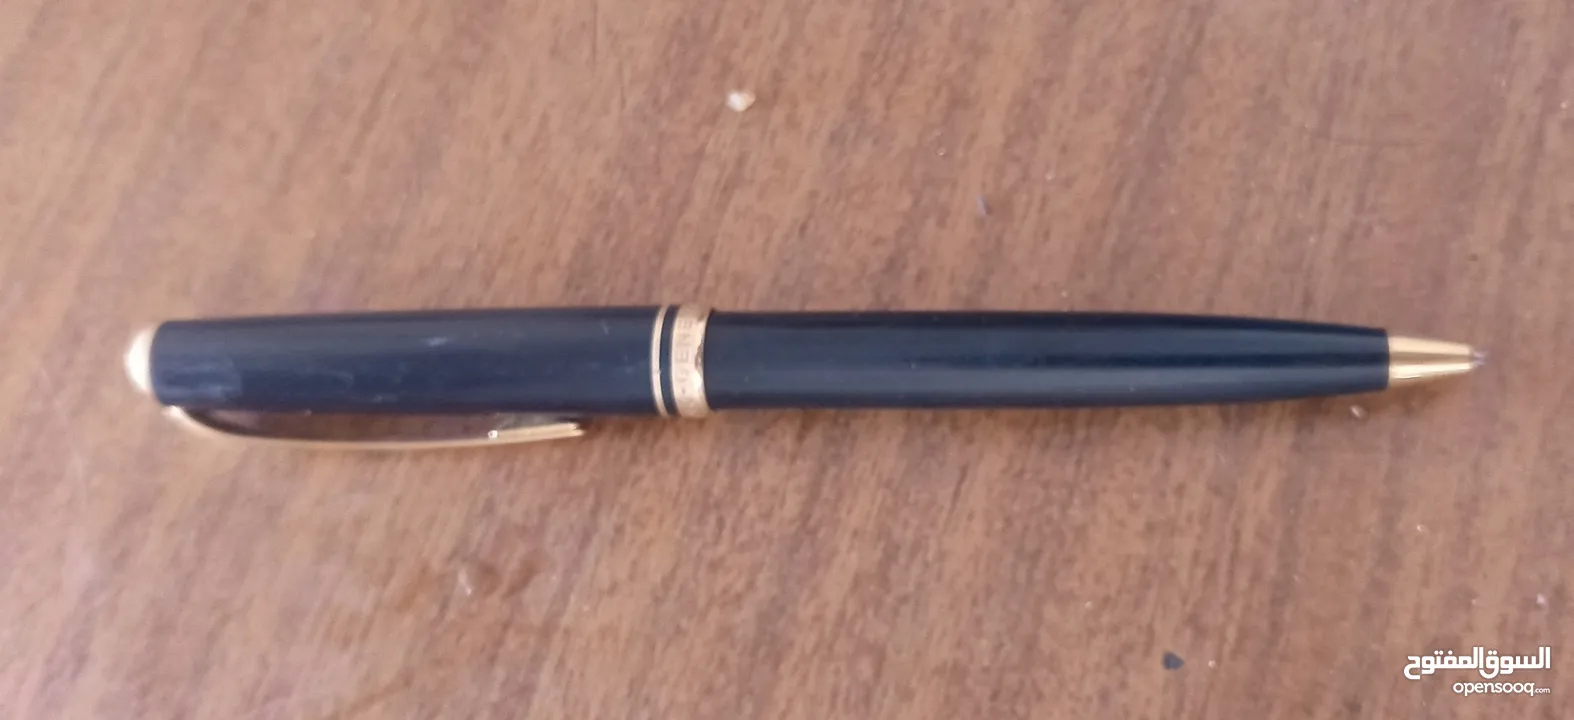 قلم مونت بلانك اصلي -MONTBLANC-GENERATION للتقييم ثم البيع